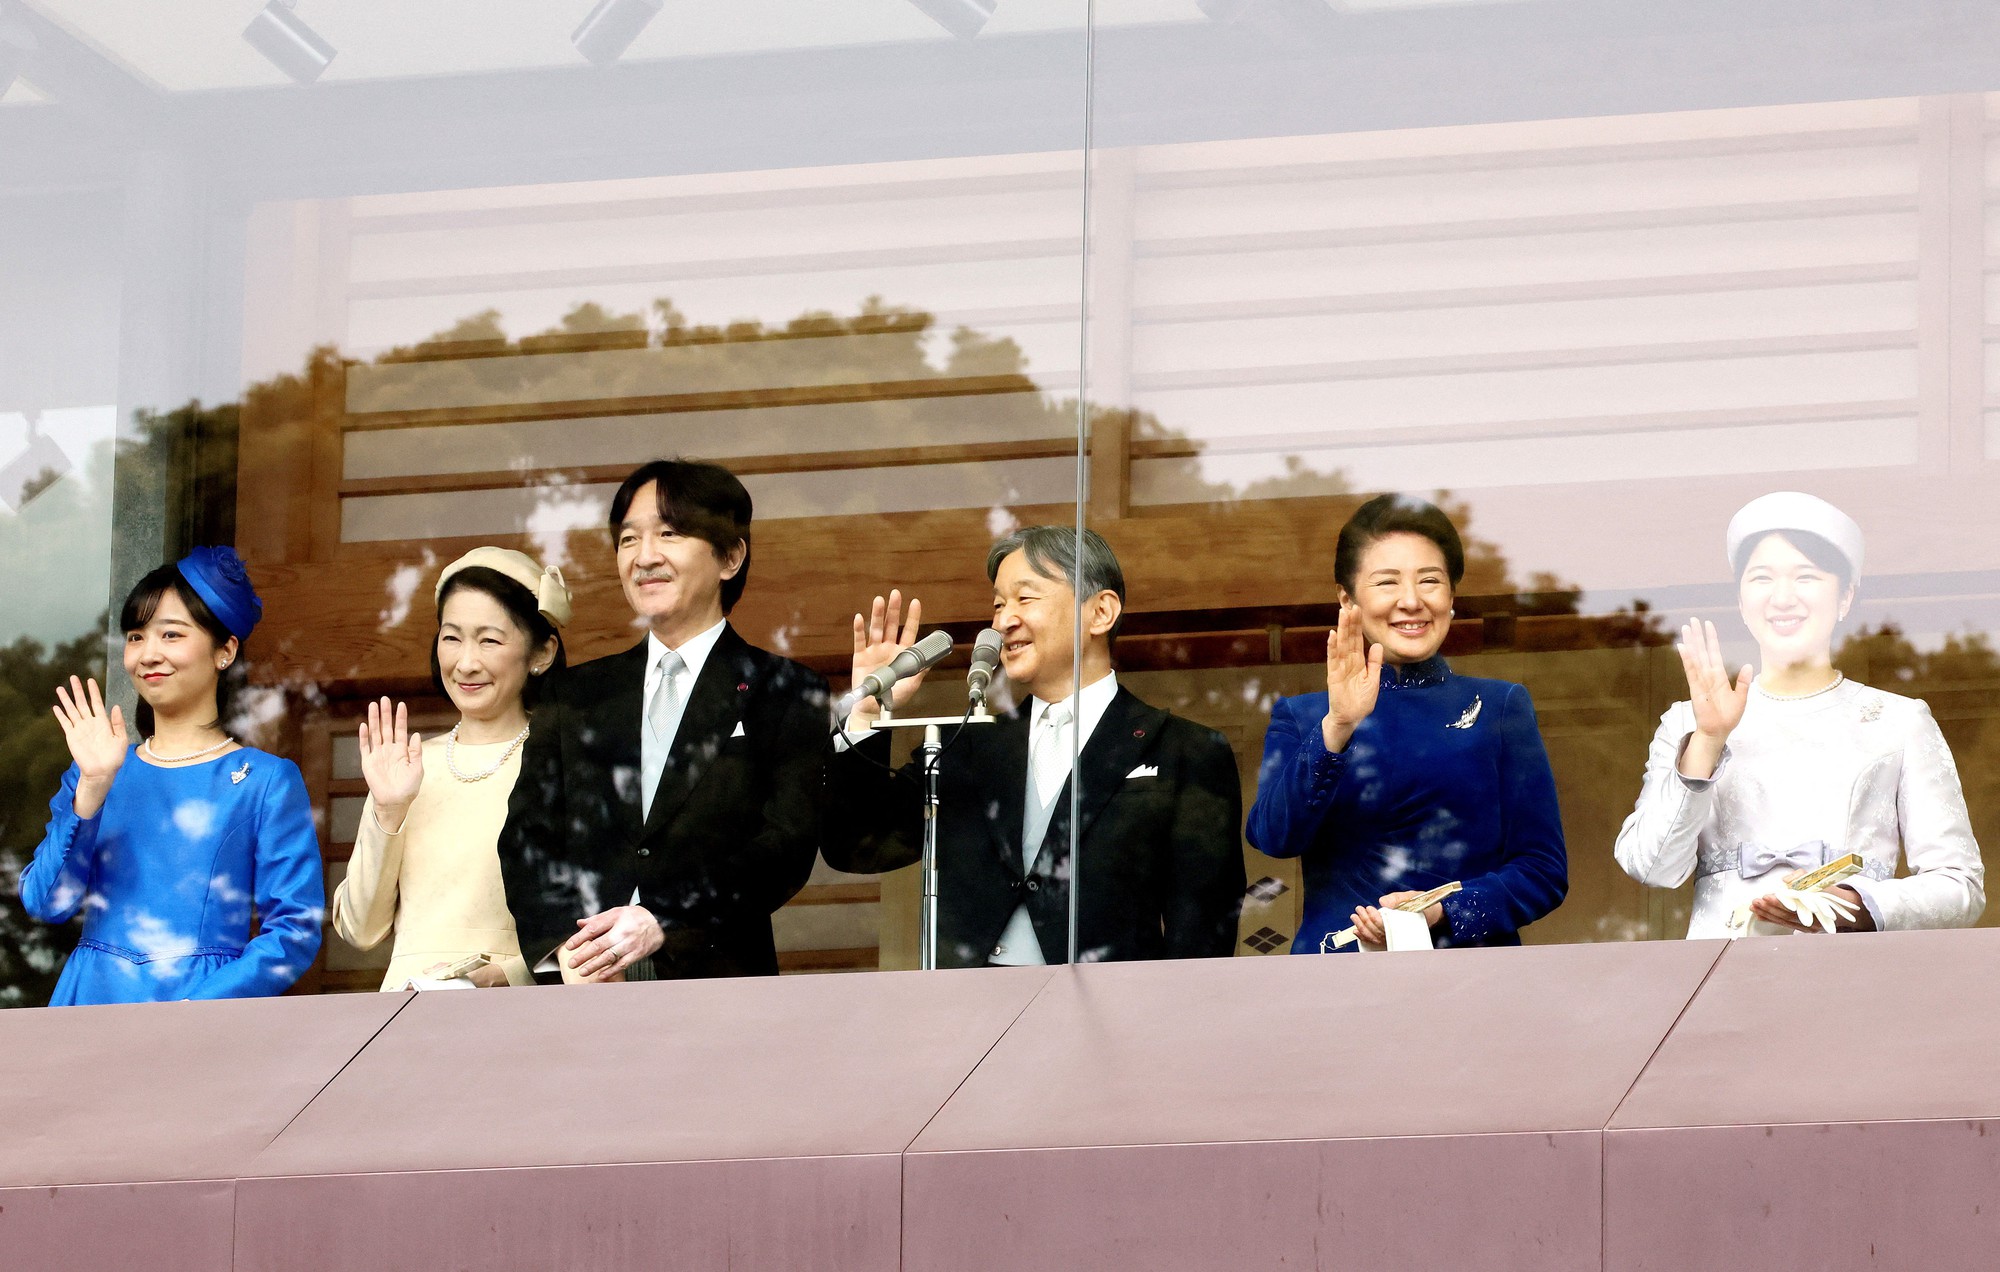 Hoàng gia Nhật Bản cùng xuất hiện tại sự kiện đặc biệt sau thời gian dài, nhan sắc 2 nàng công chúa gây bất ngờ- Ảnh 3.